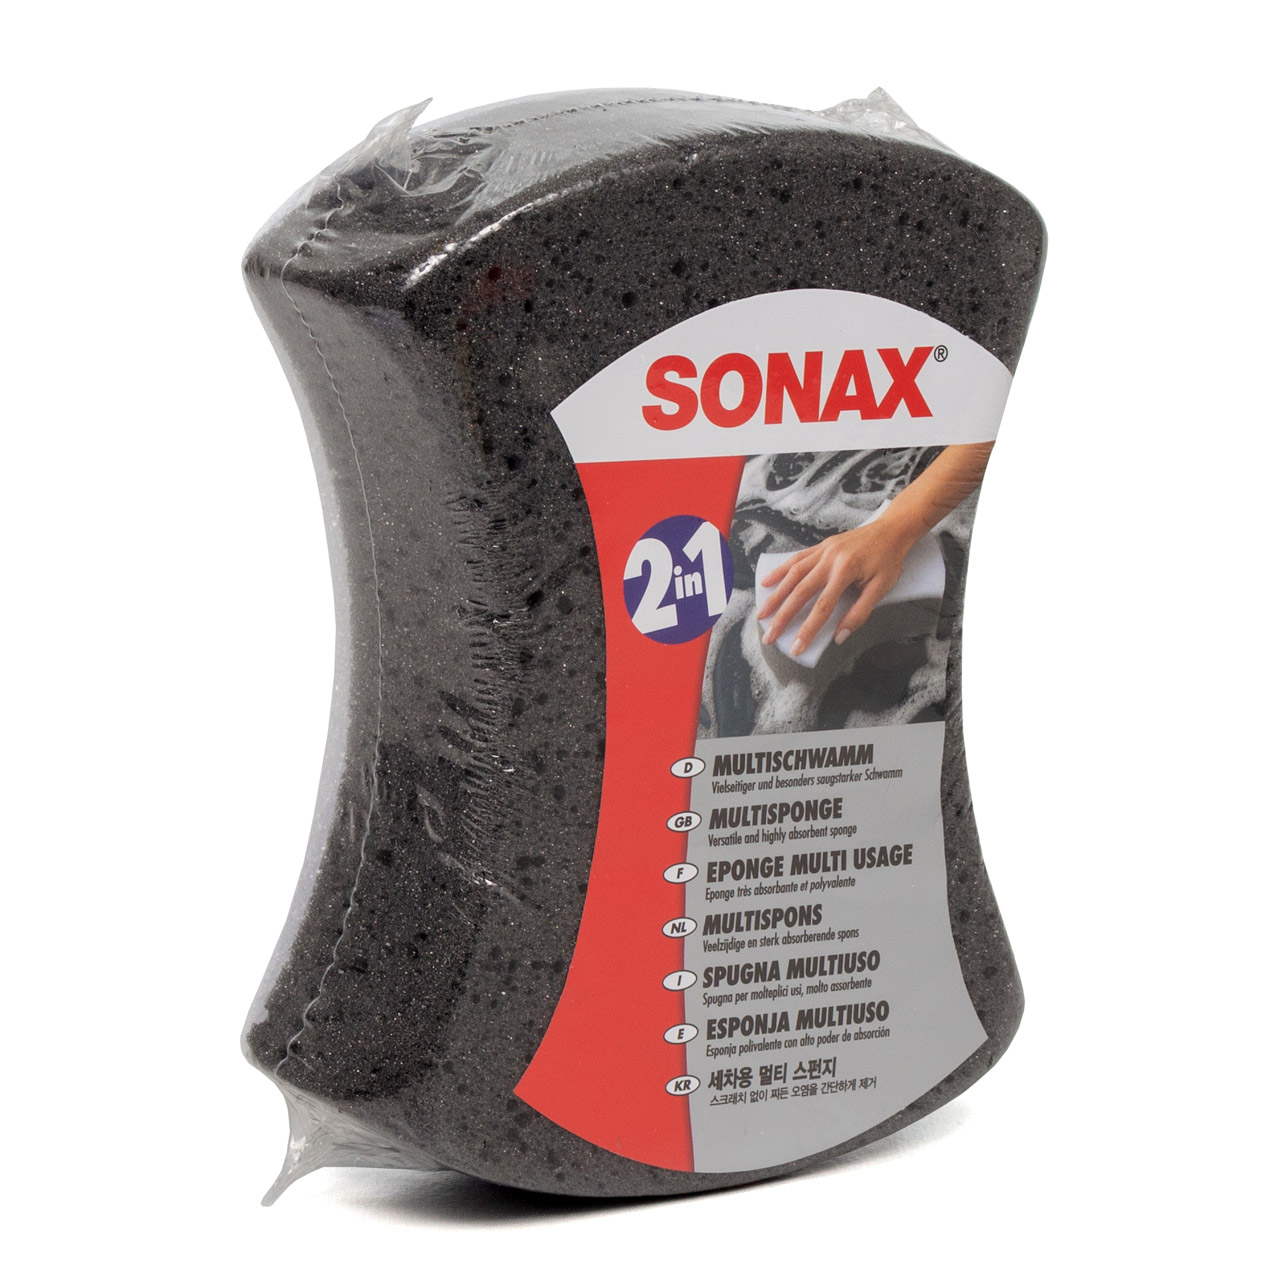 SONAX Multi Schwamm Alleskönner Insekten Entfernen + Microfaser Schwamm 2in1